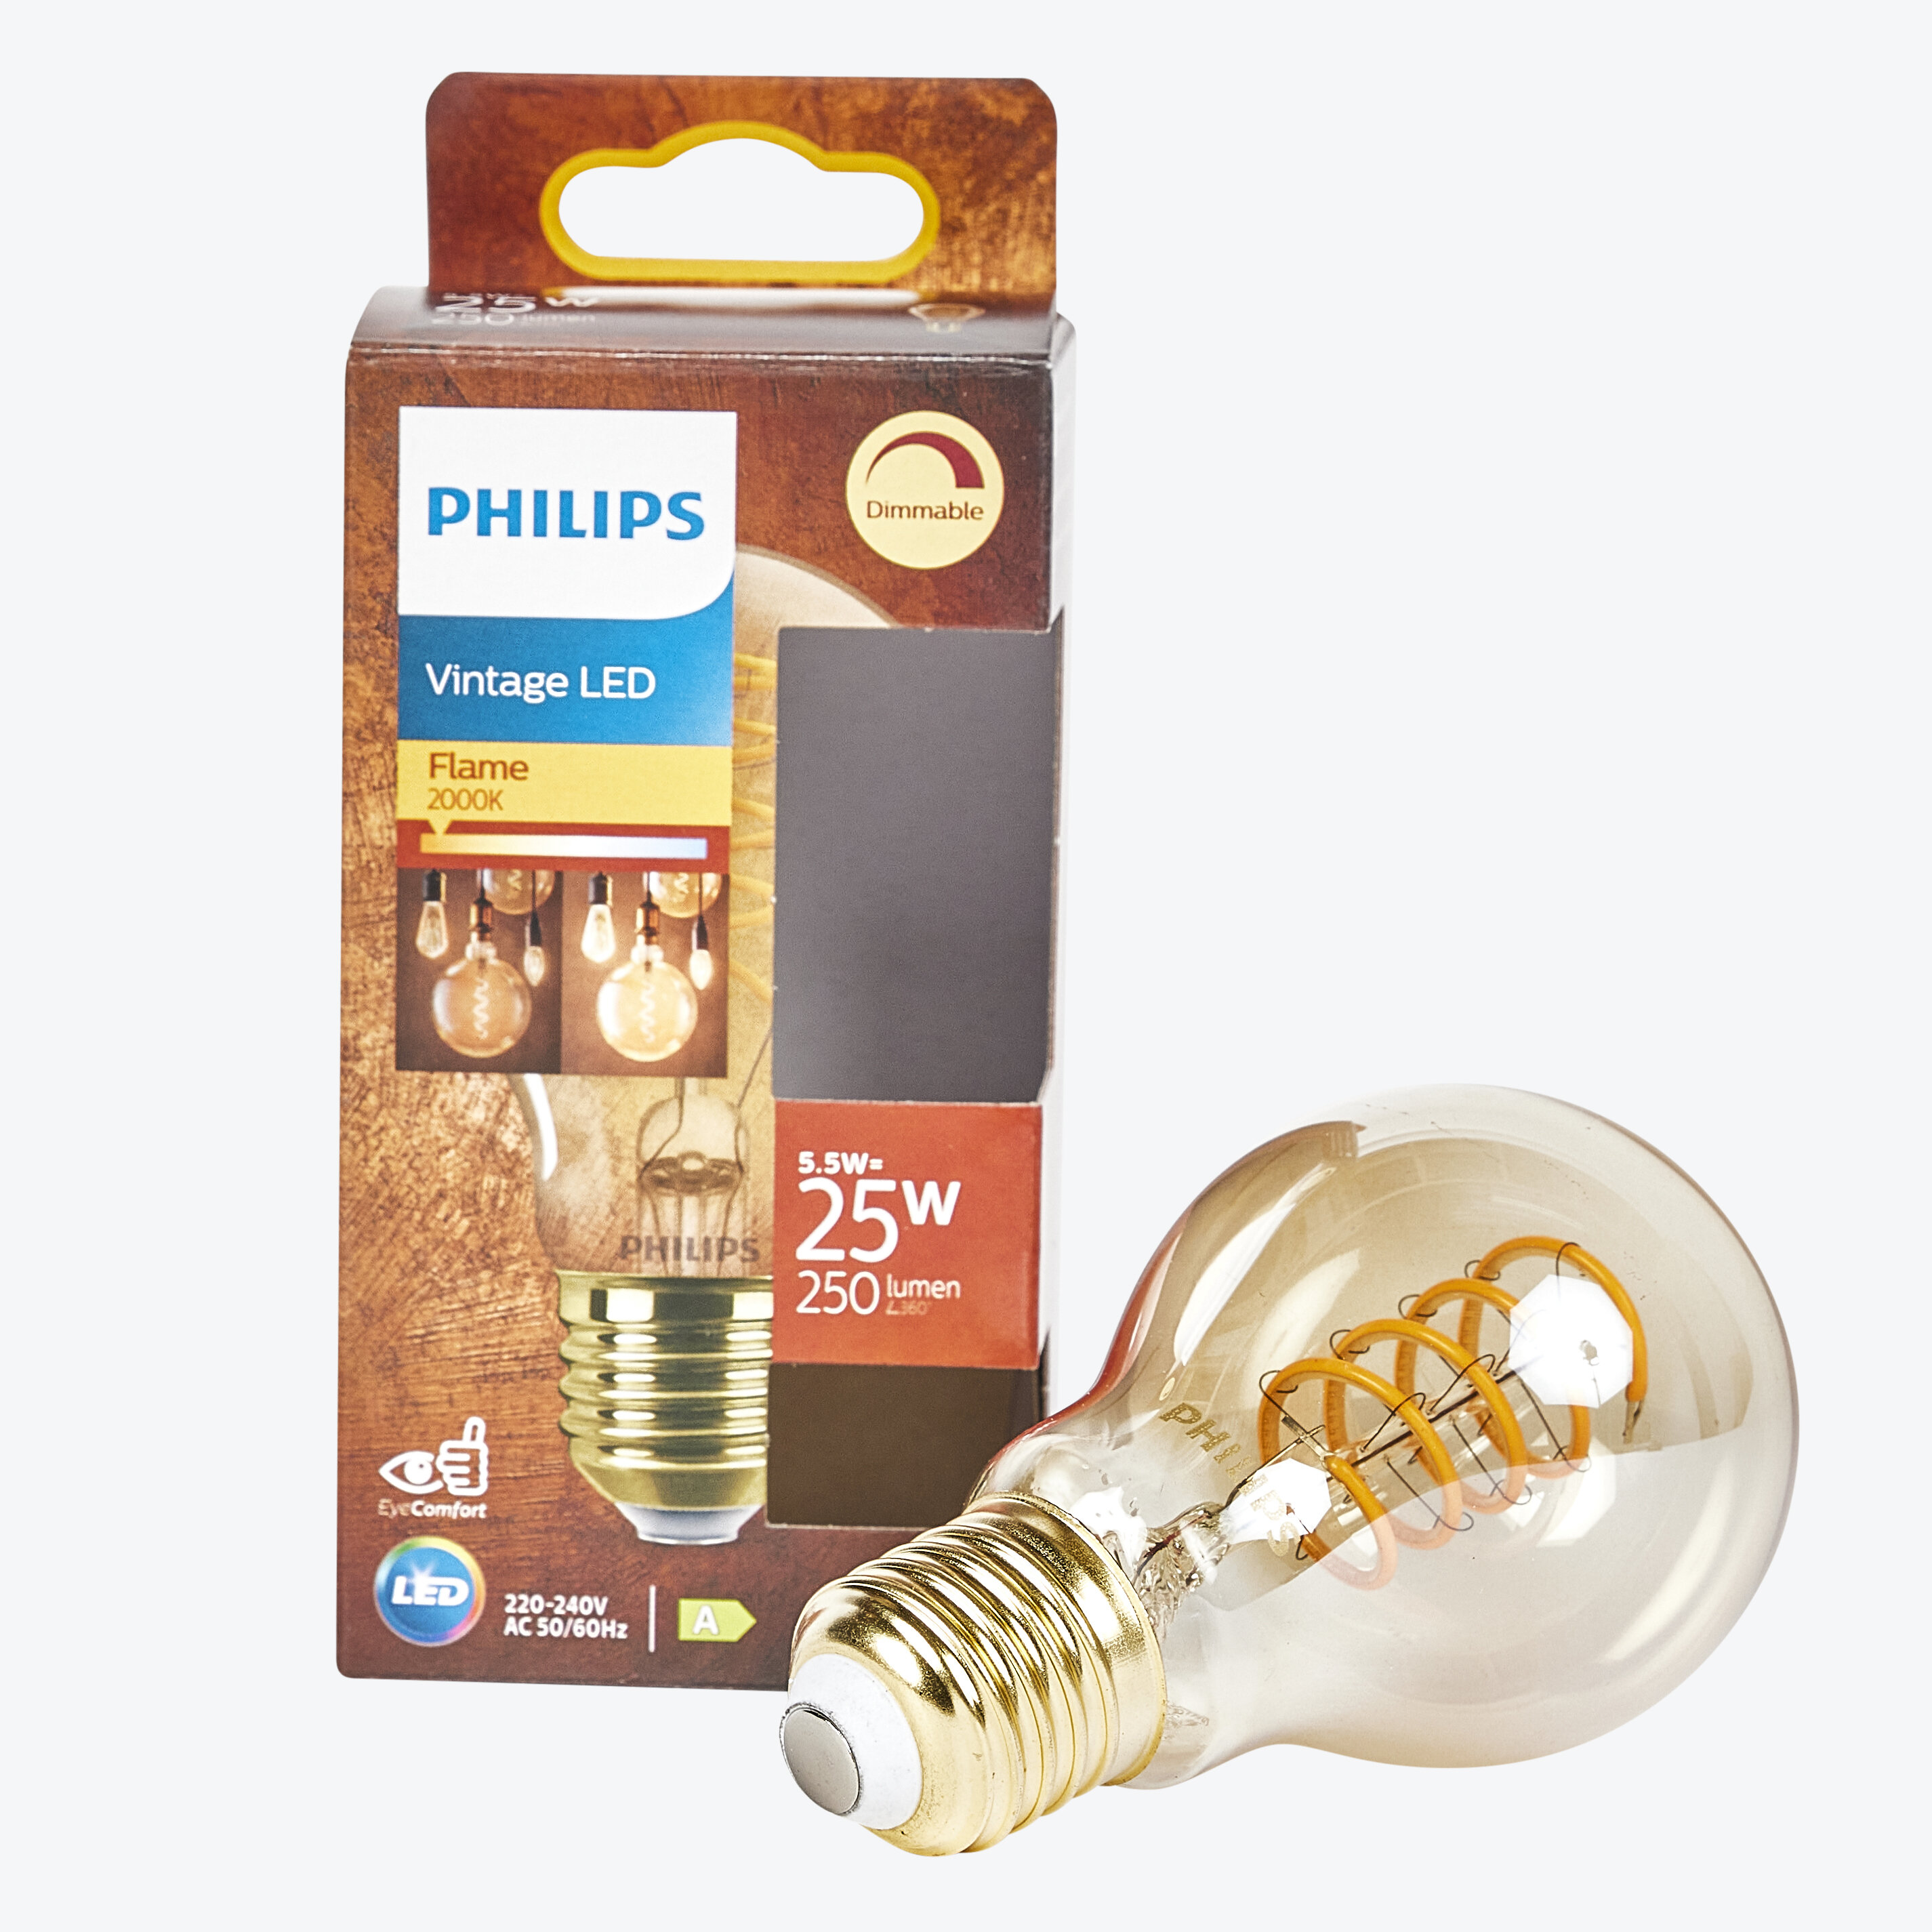 Philips LED classic 25W